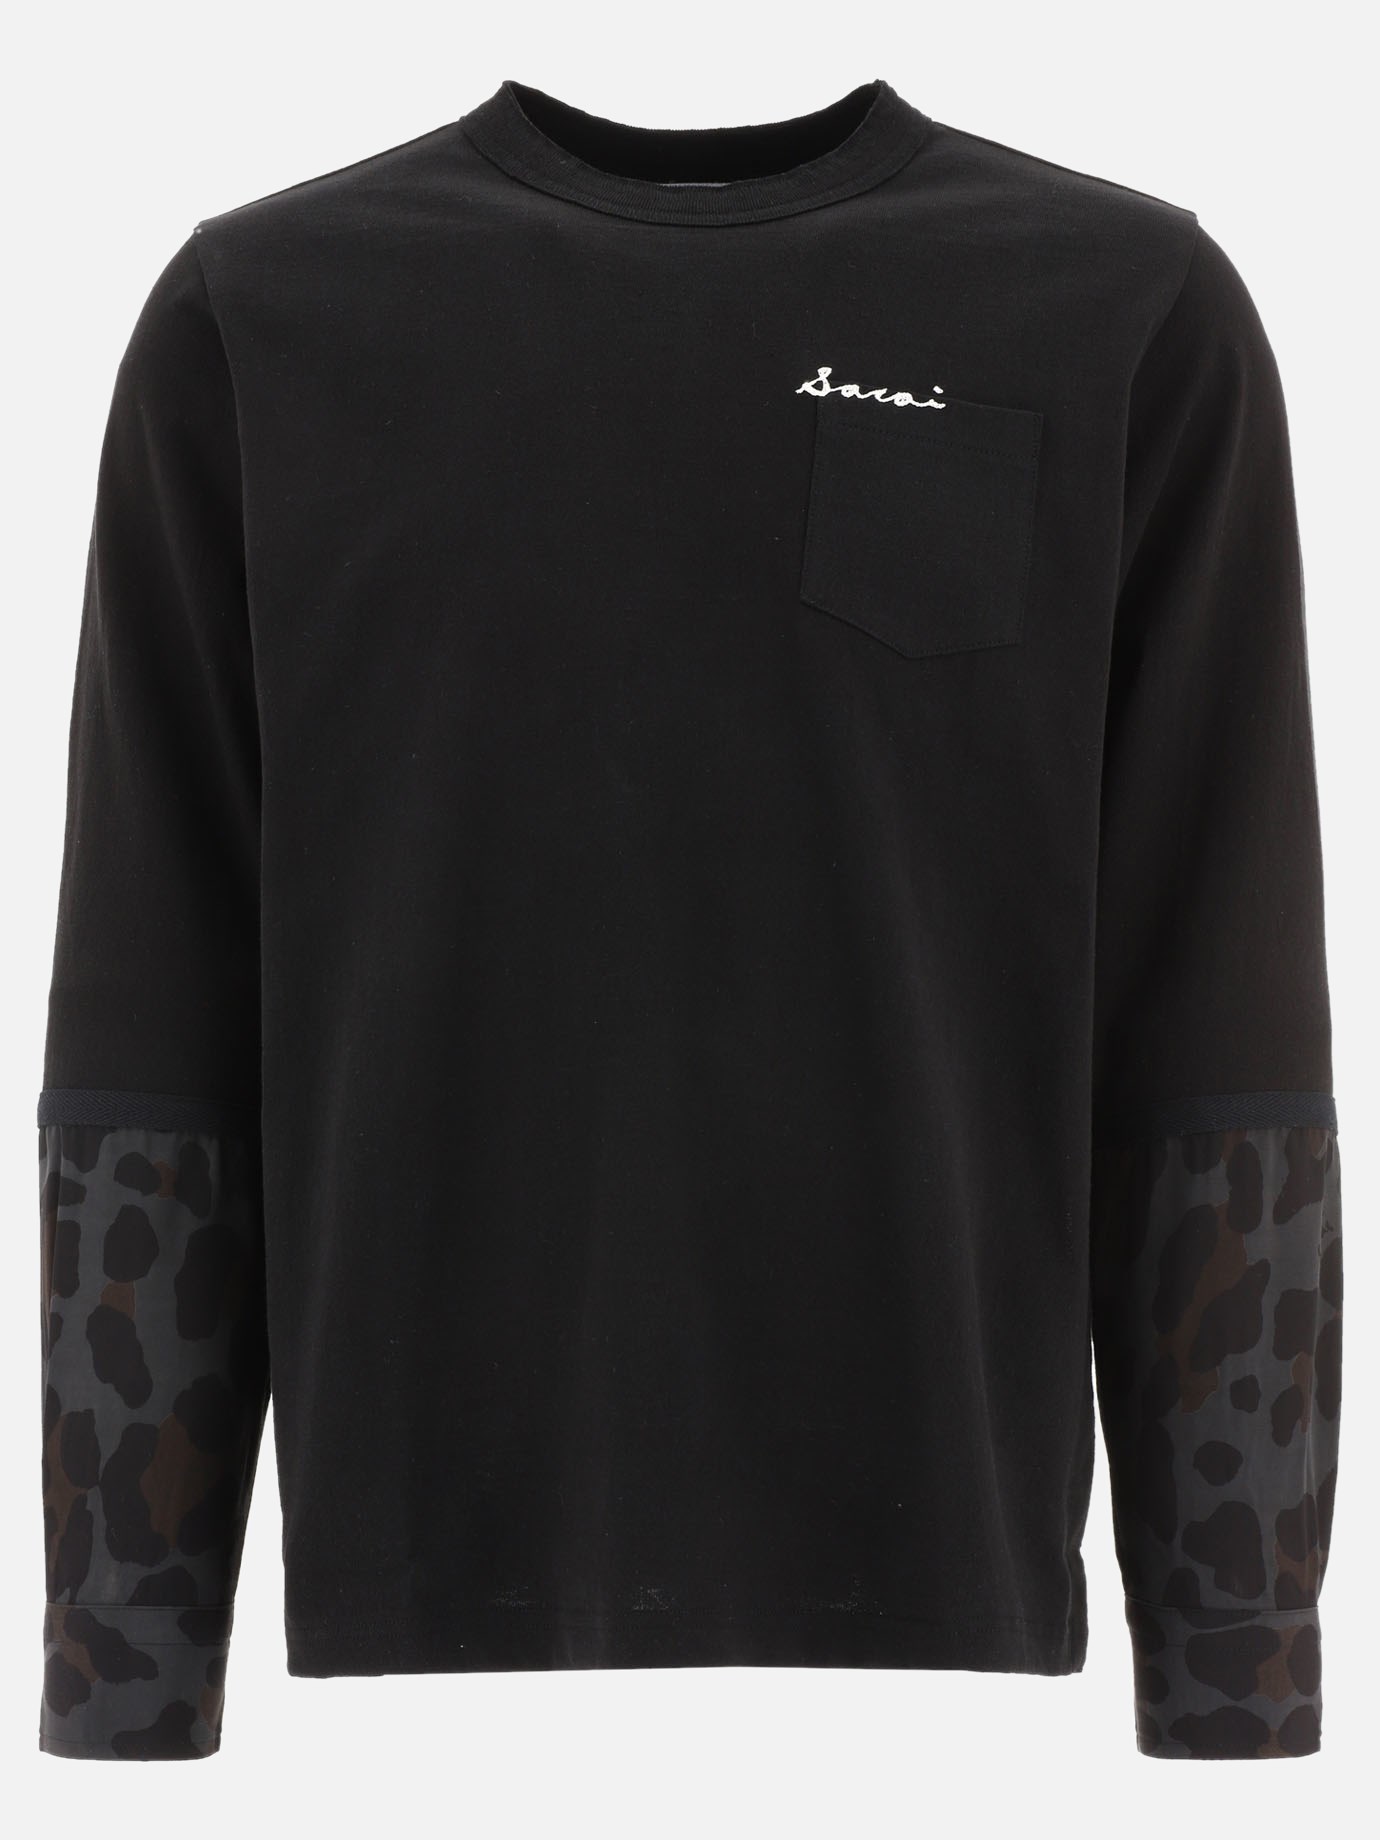  Leopard  t-shirtby Sacai - 2